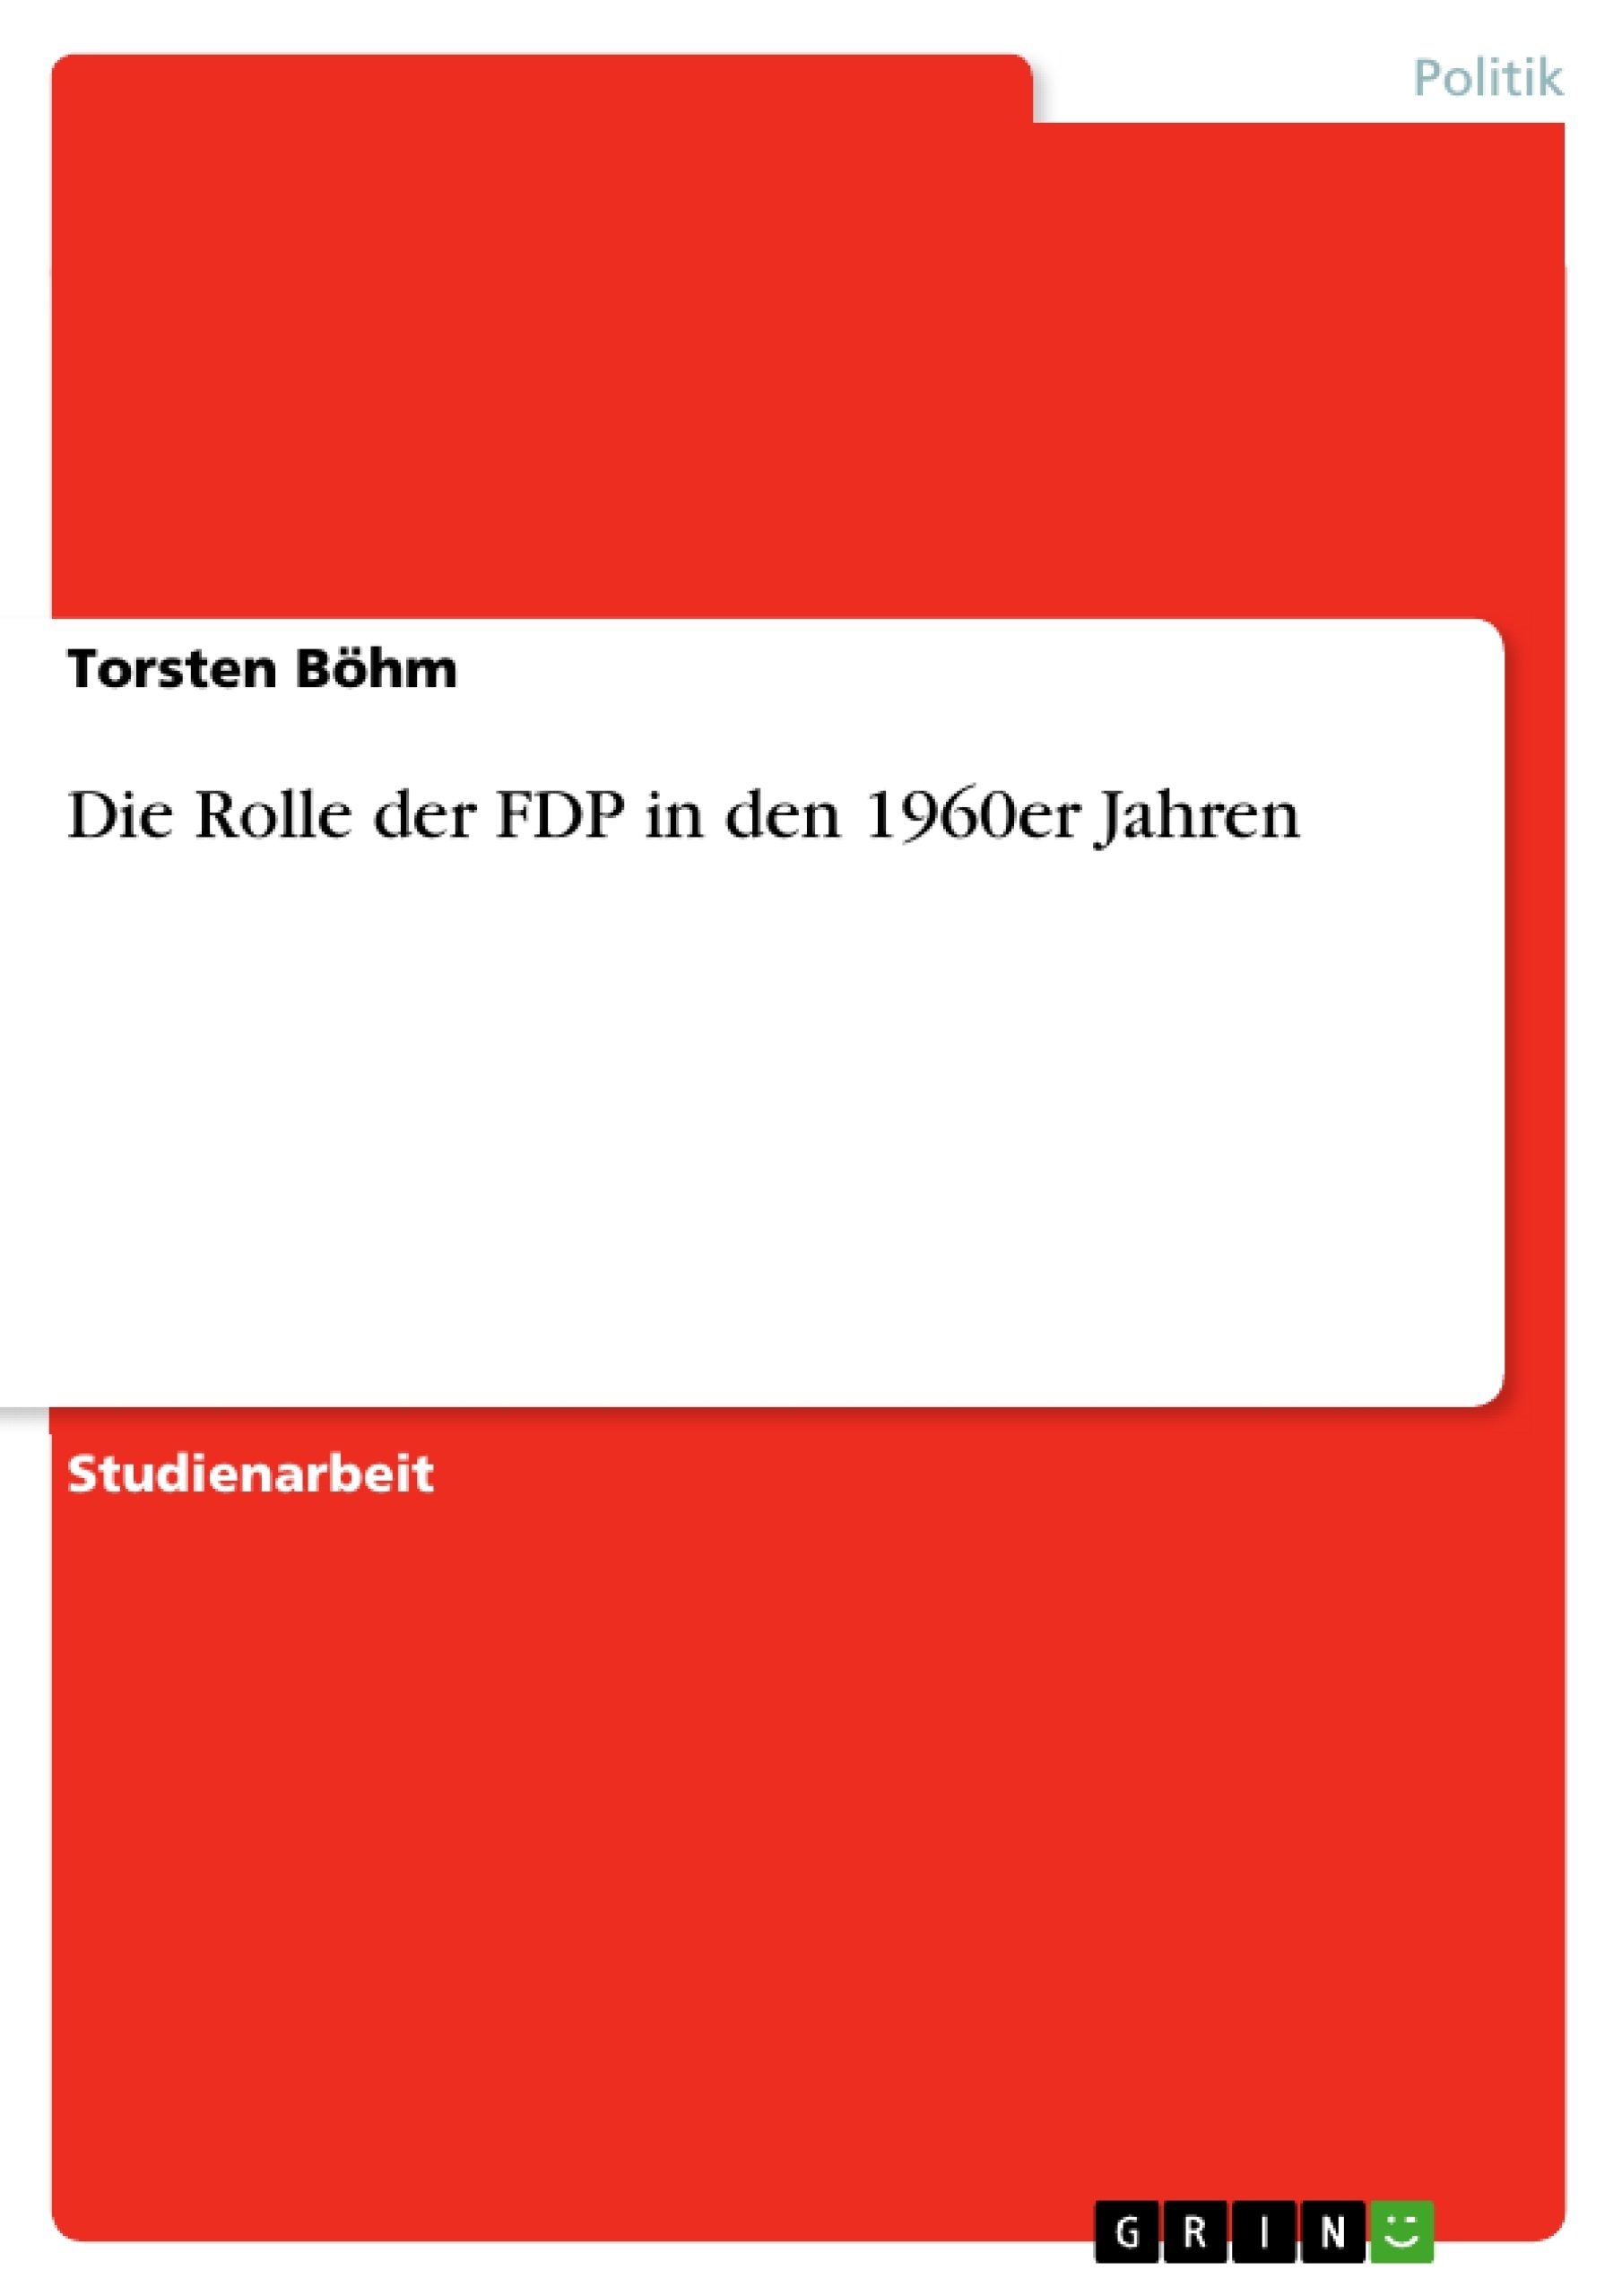 Title: Die Rolle der FDP in den 1960er Jahren